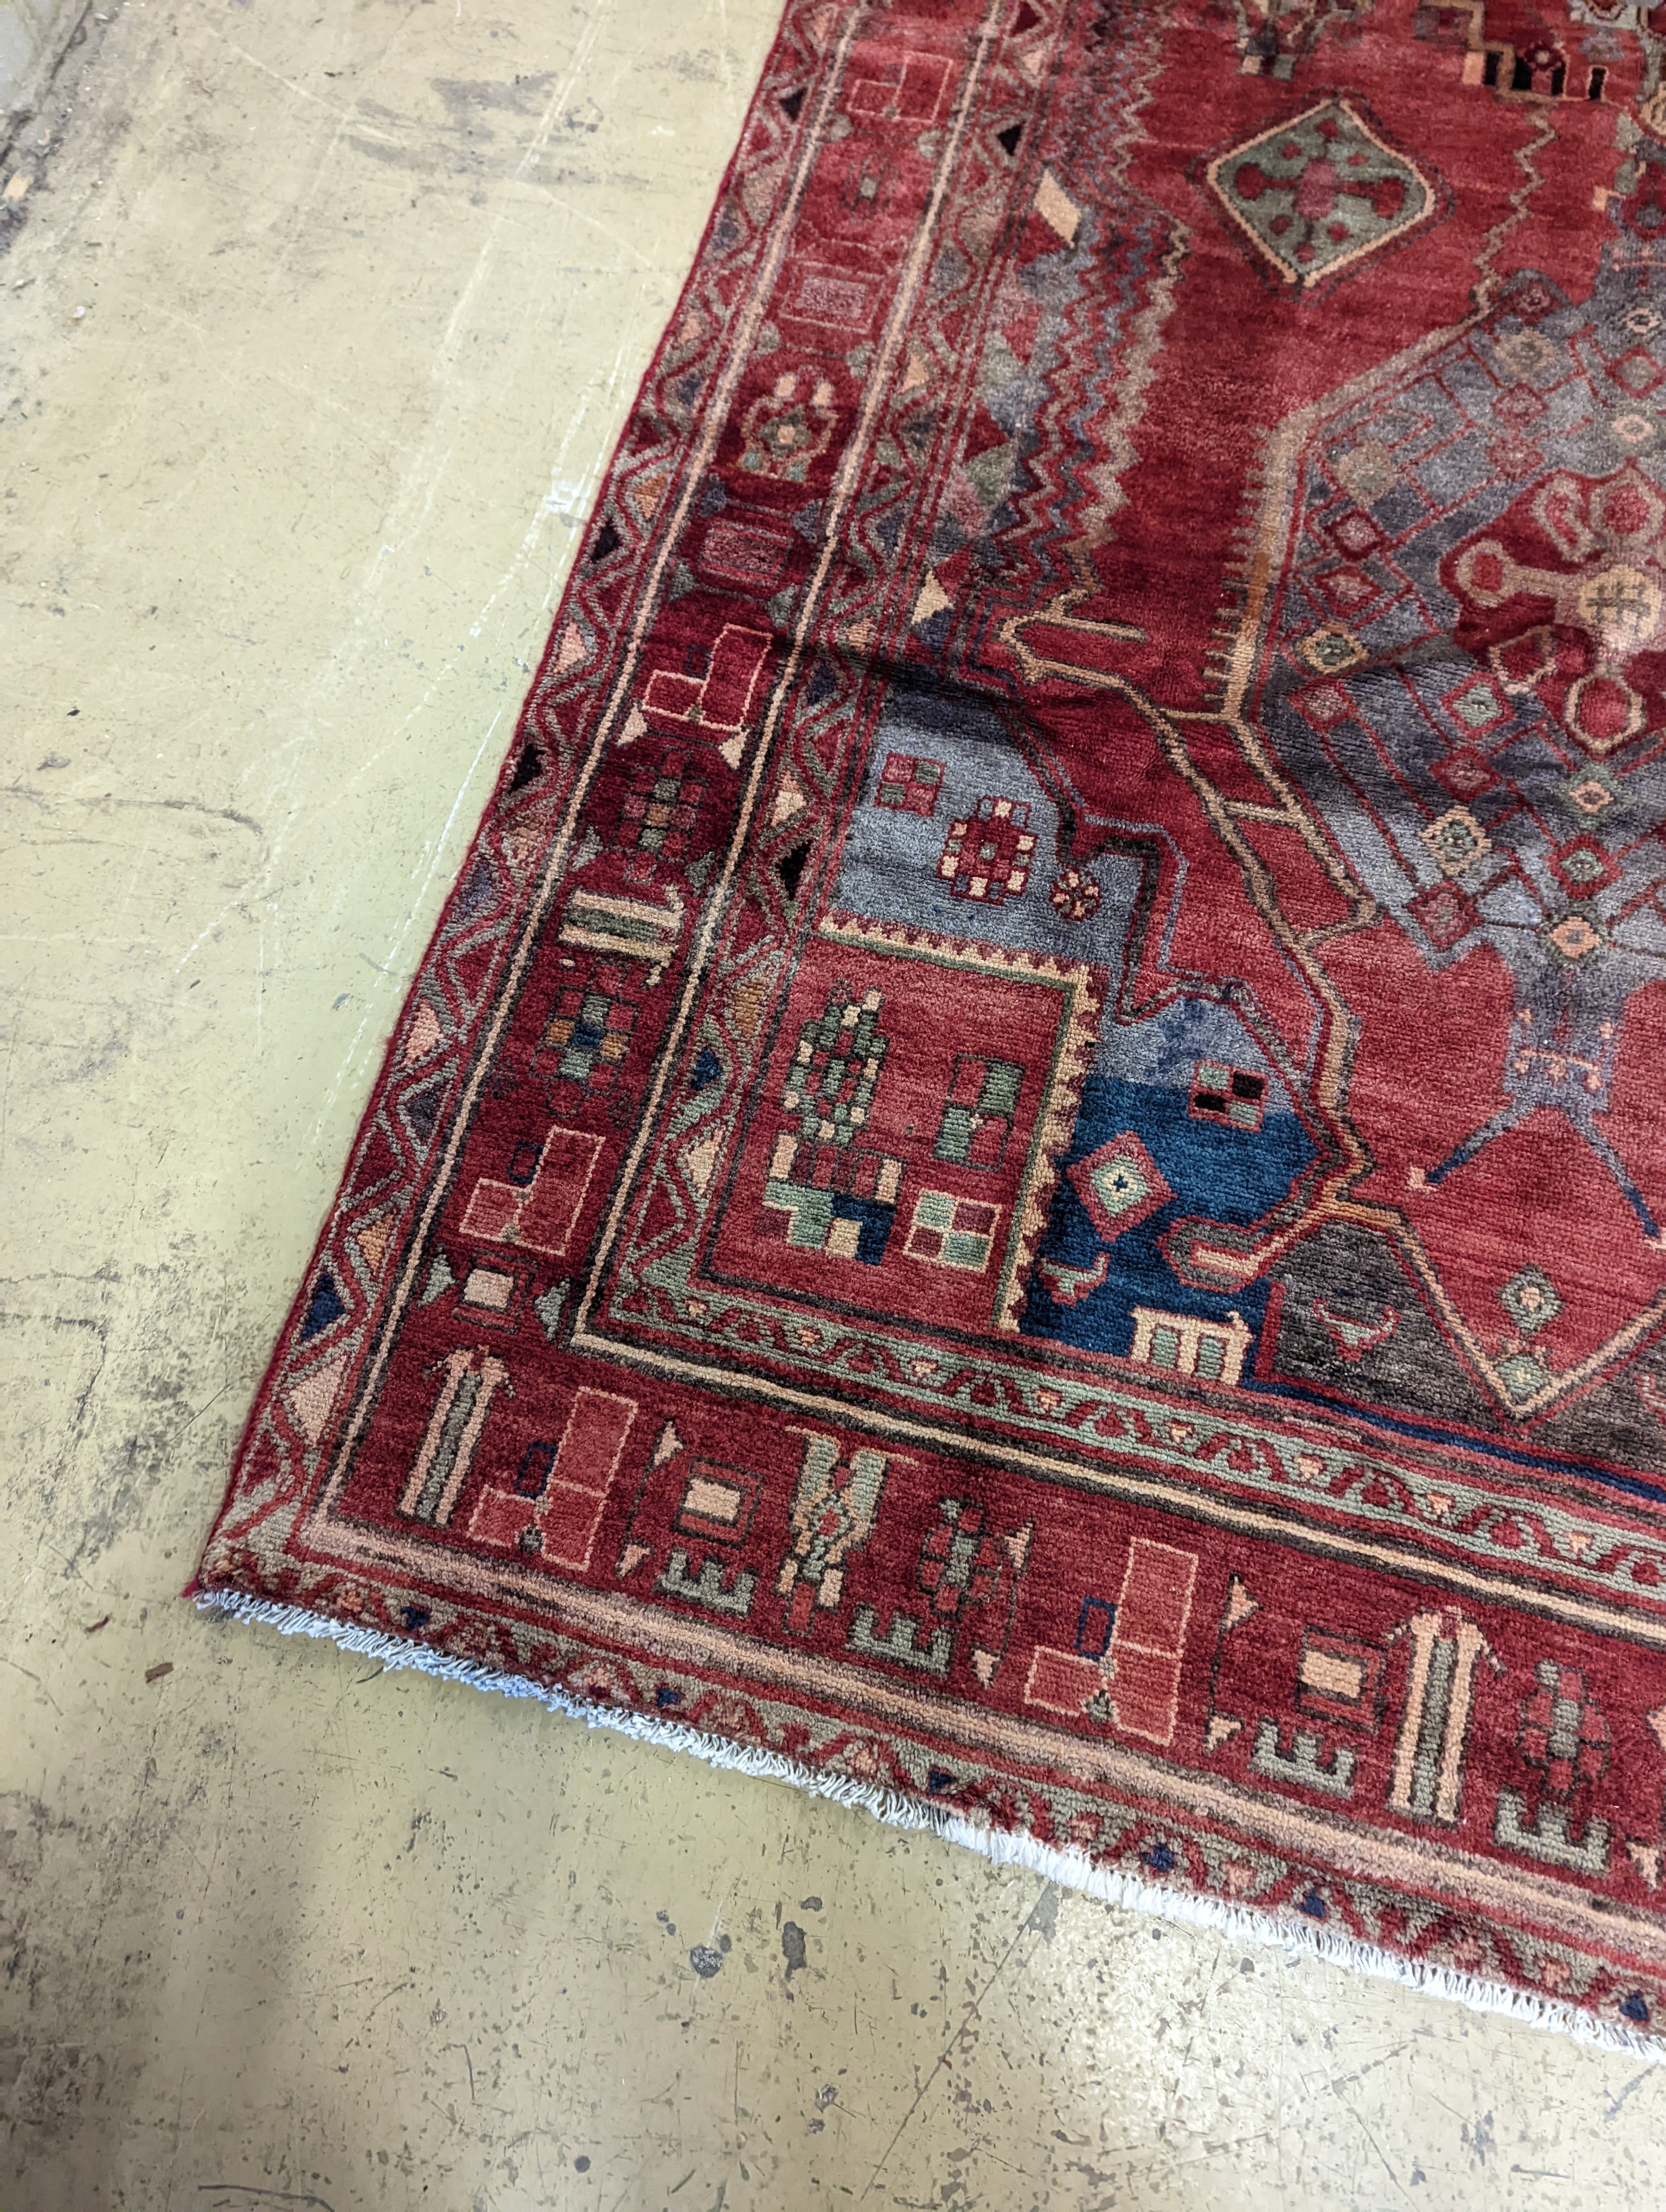 An Ardabil carpet, 322 x 157cm